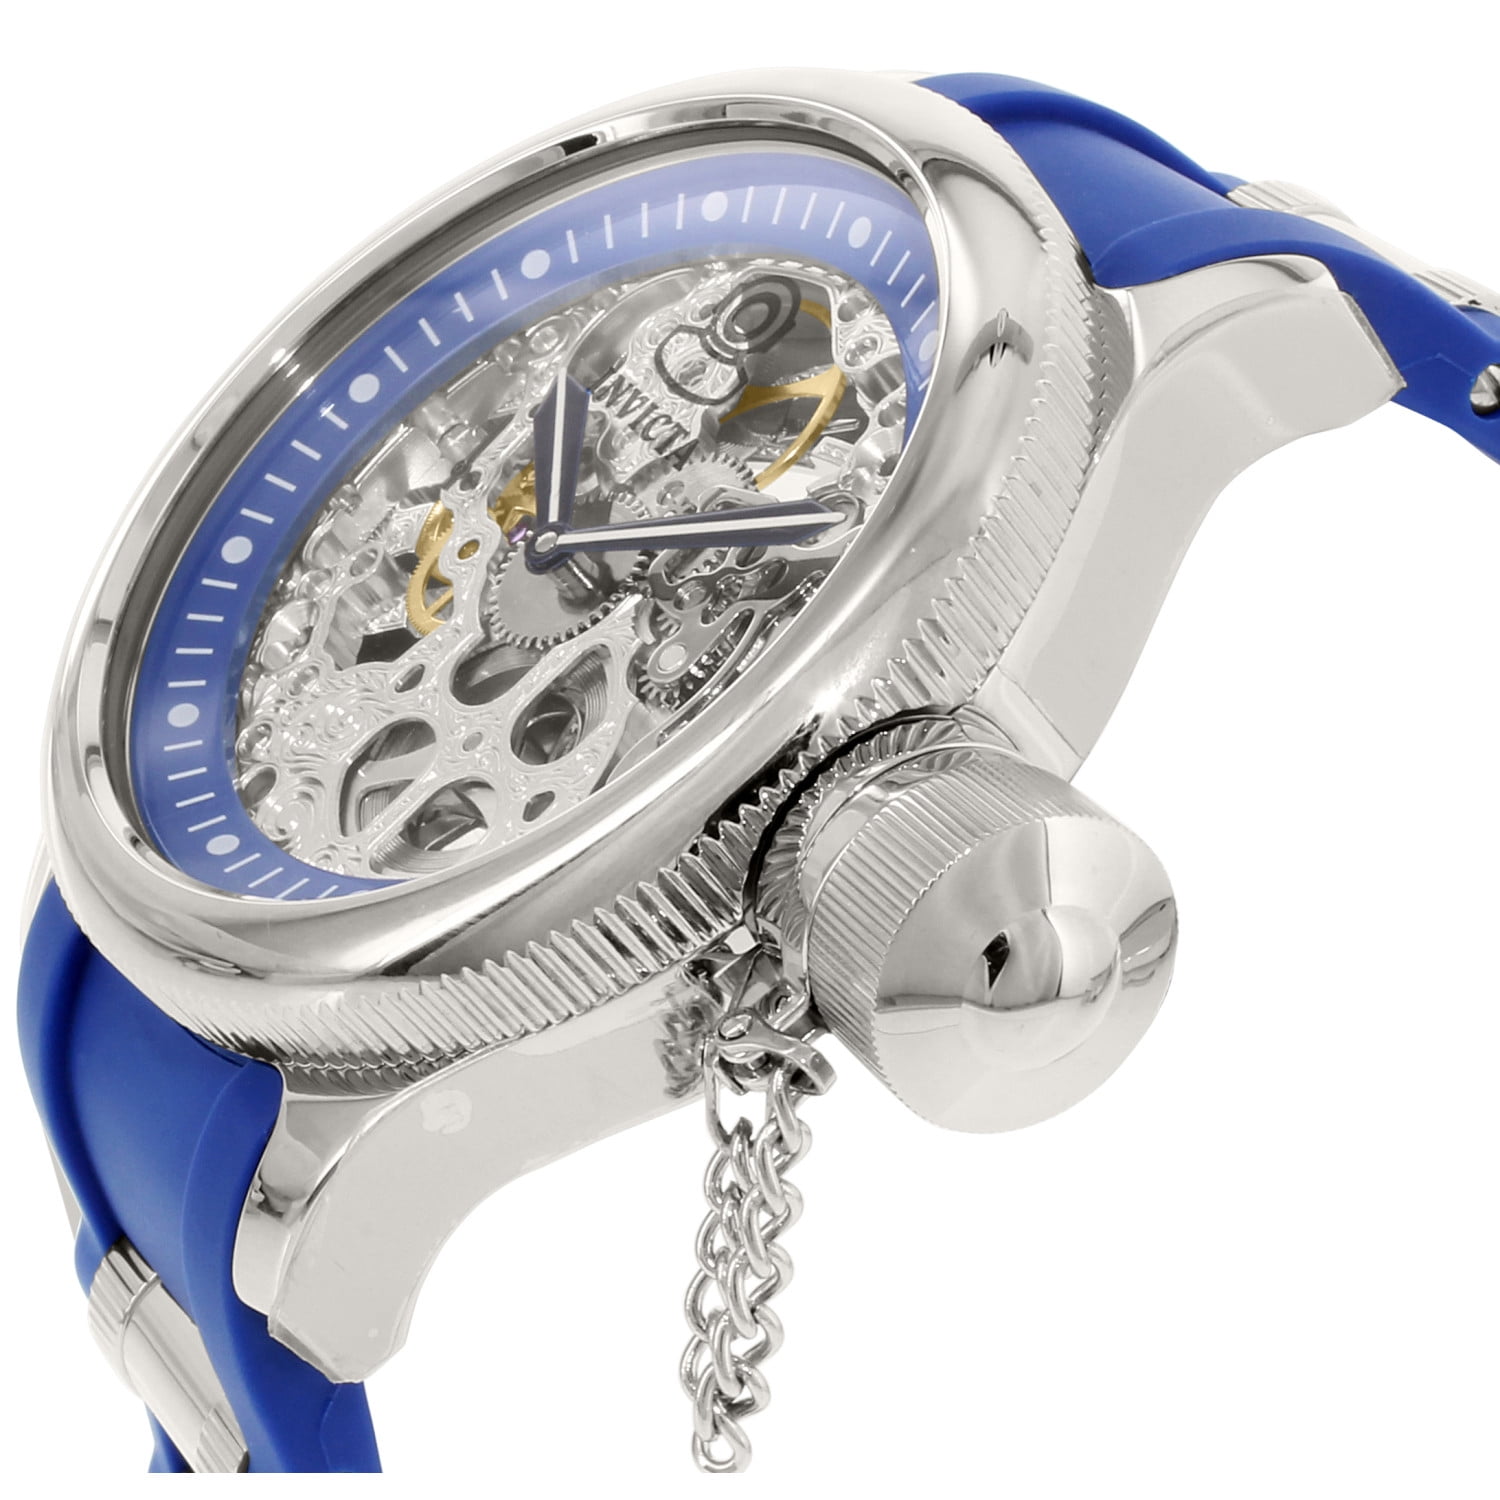 Invicta Men's Russian Diver 1089 Blue Silicone Automatic Watch